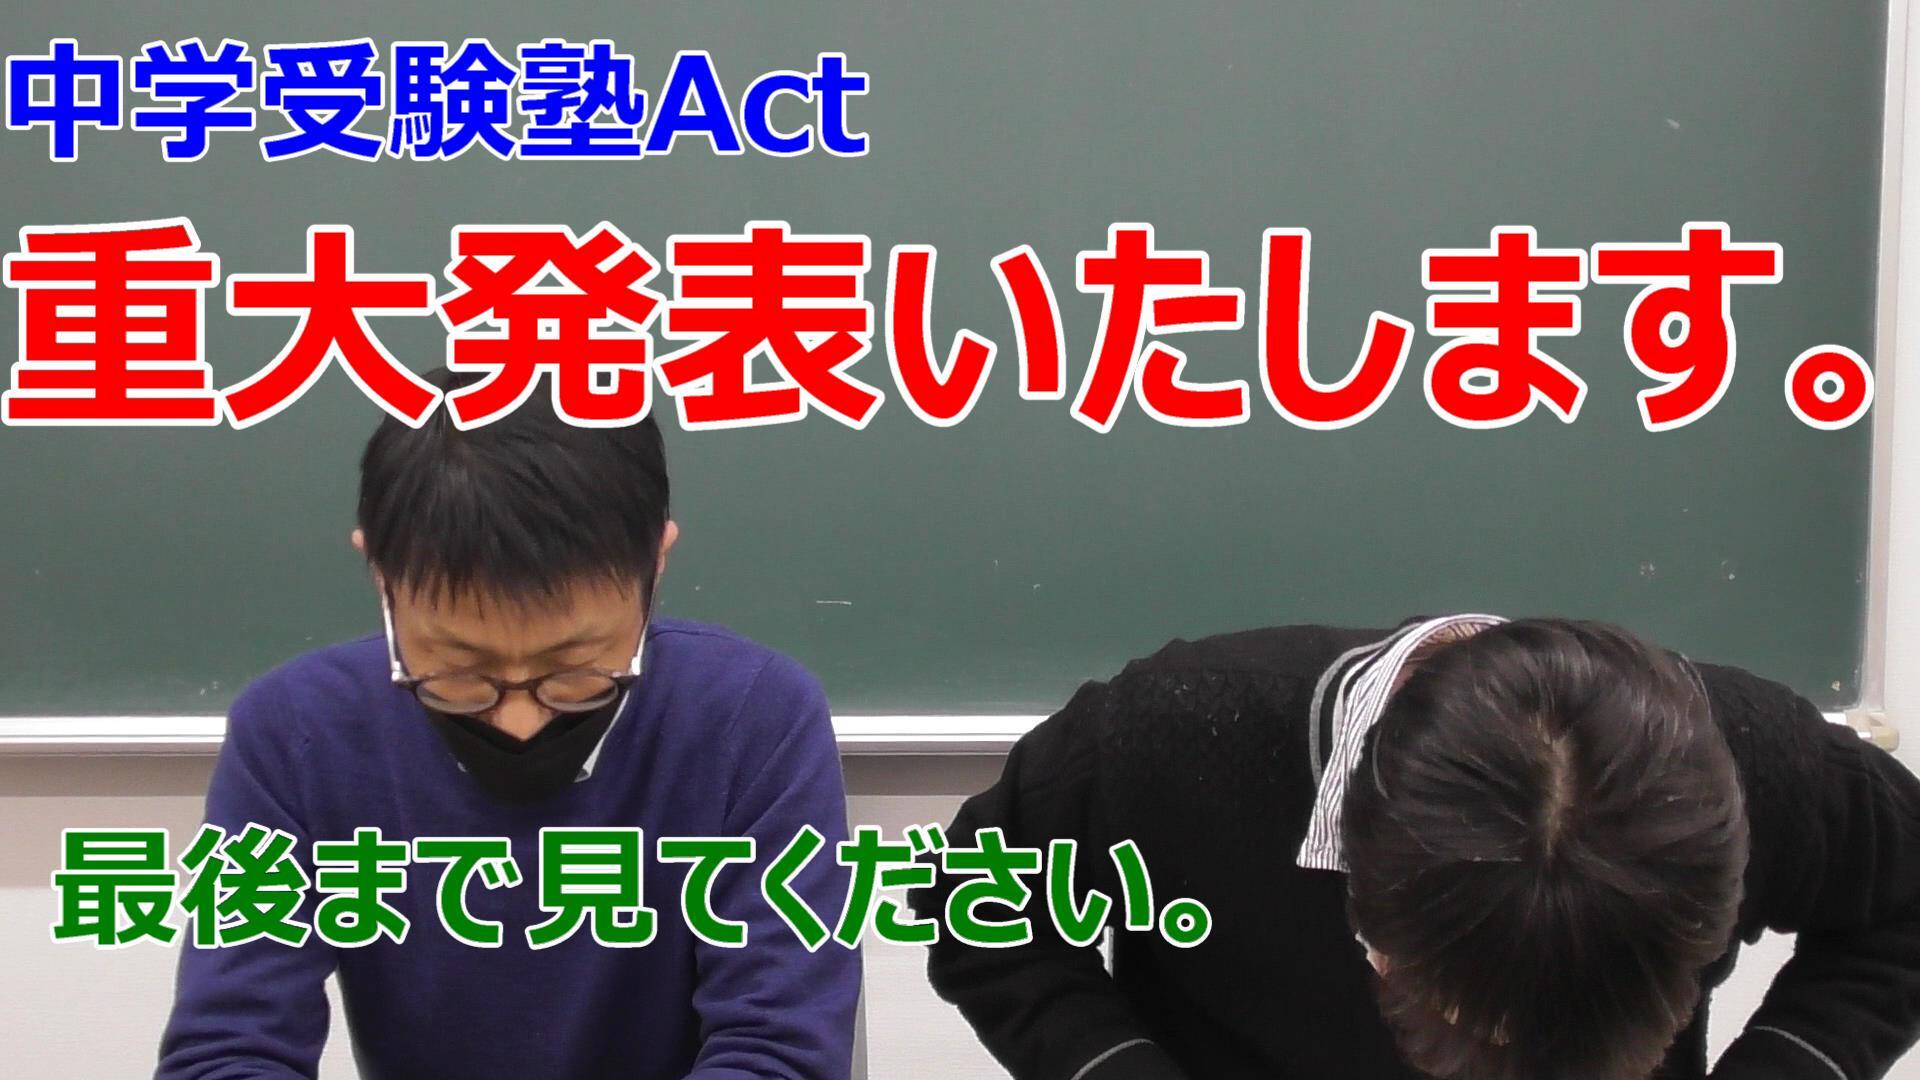 戸塚 中央林間で中学受験をお考えなら中学受験塾actにお任せください